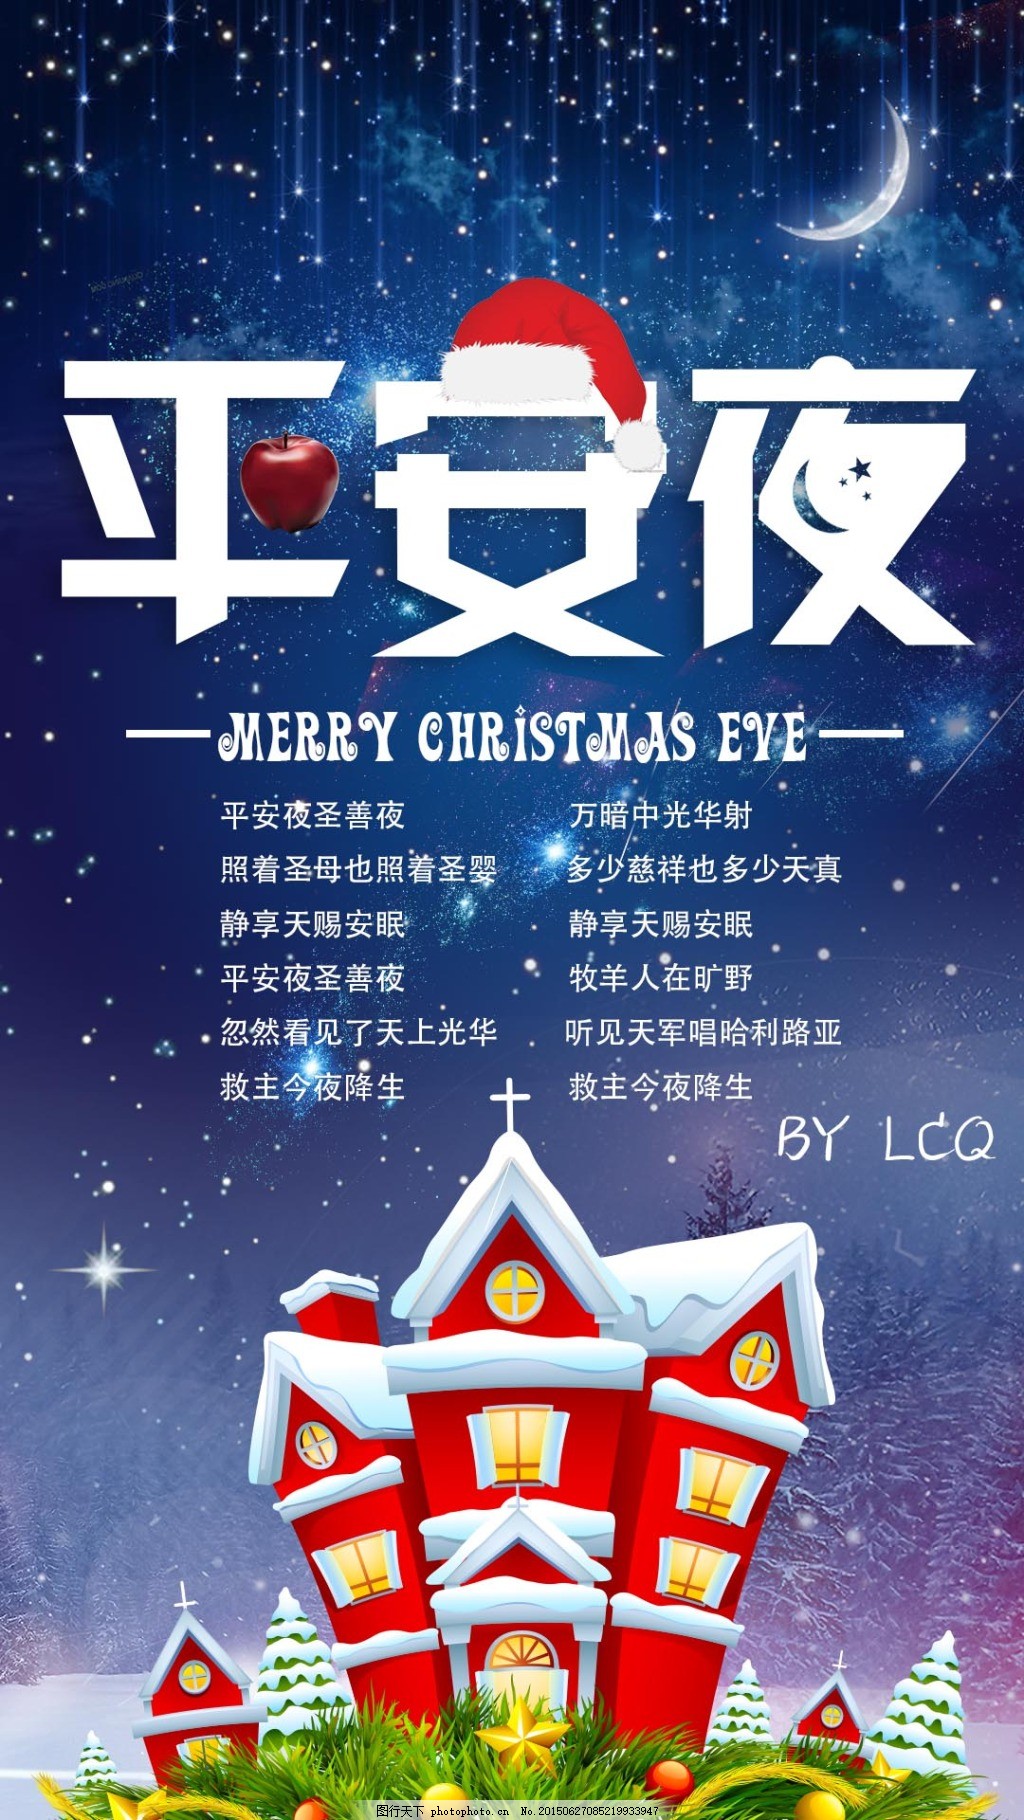 蓝白色圣诞树圣诞老人麋鹿下雪插画手绘平安夜节日分享中文海报 - 模板 - Canva可画